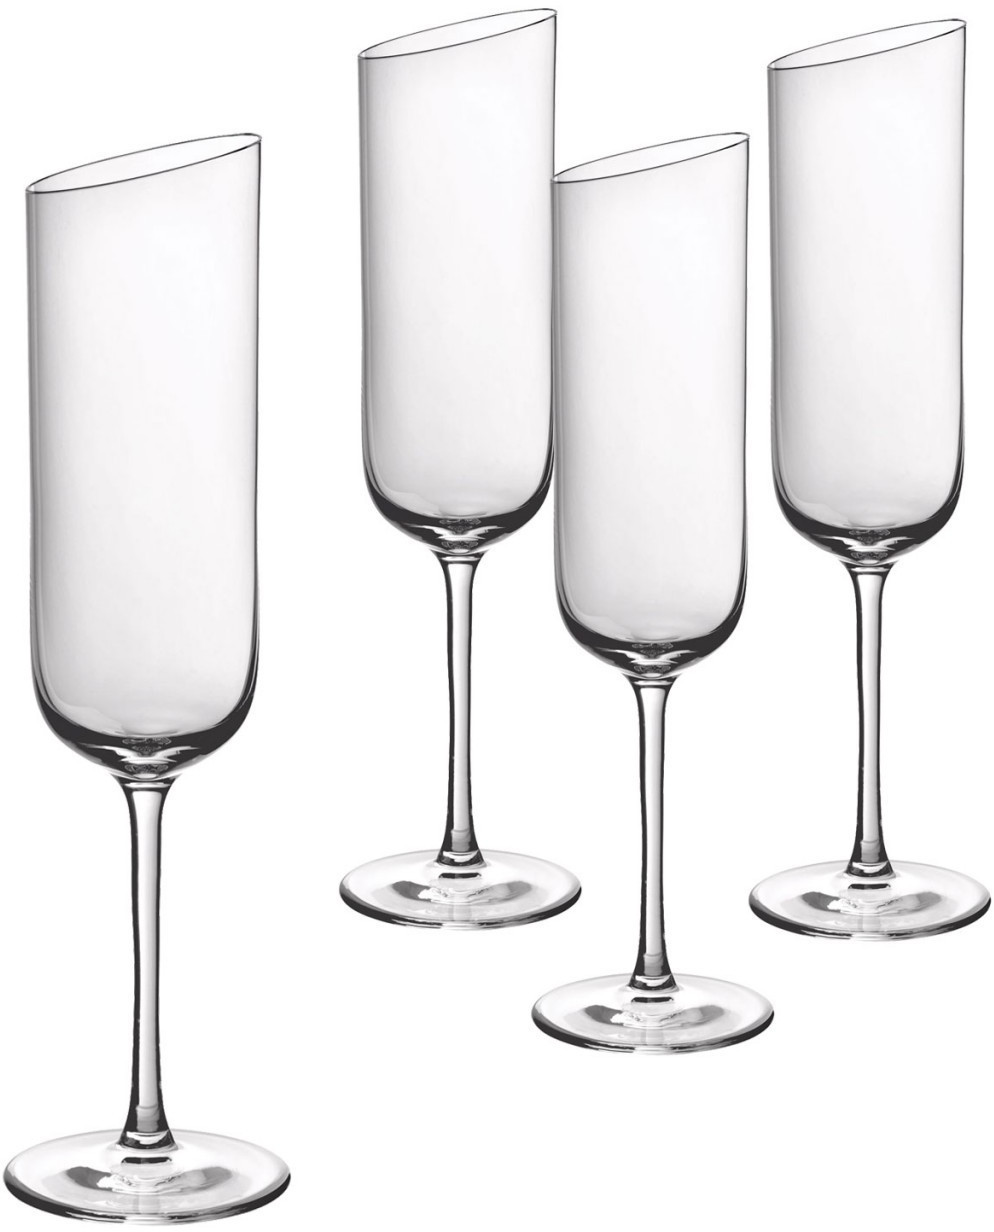 Villeroy & Boch New Moon Set, 4 Pieces, Elegant, Modern Sloping Champagne,  Crystal Glass, Transparent, Dishwasher Safe,170 Milliliters